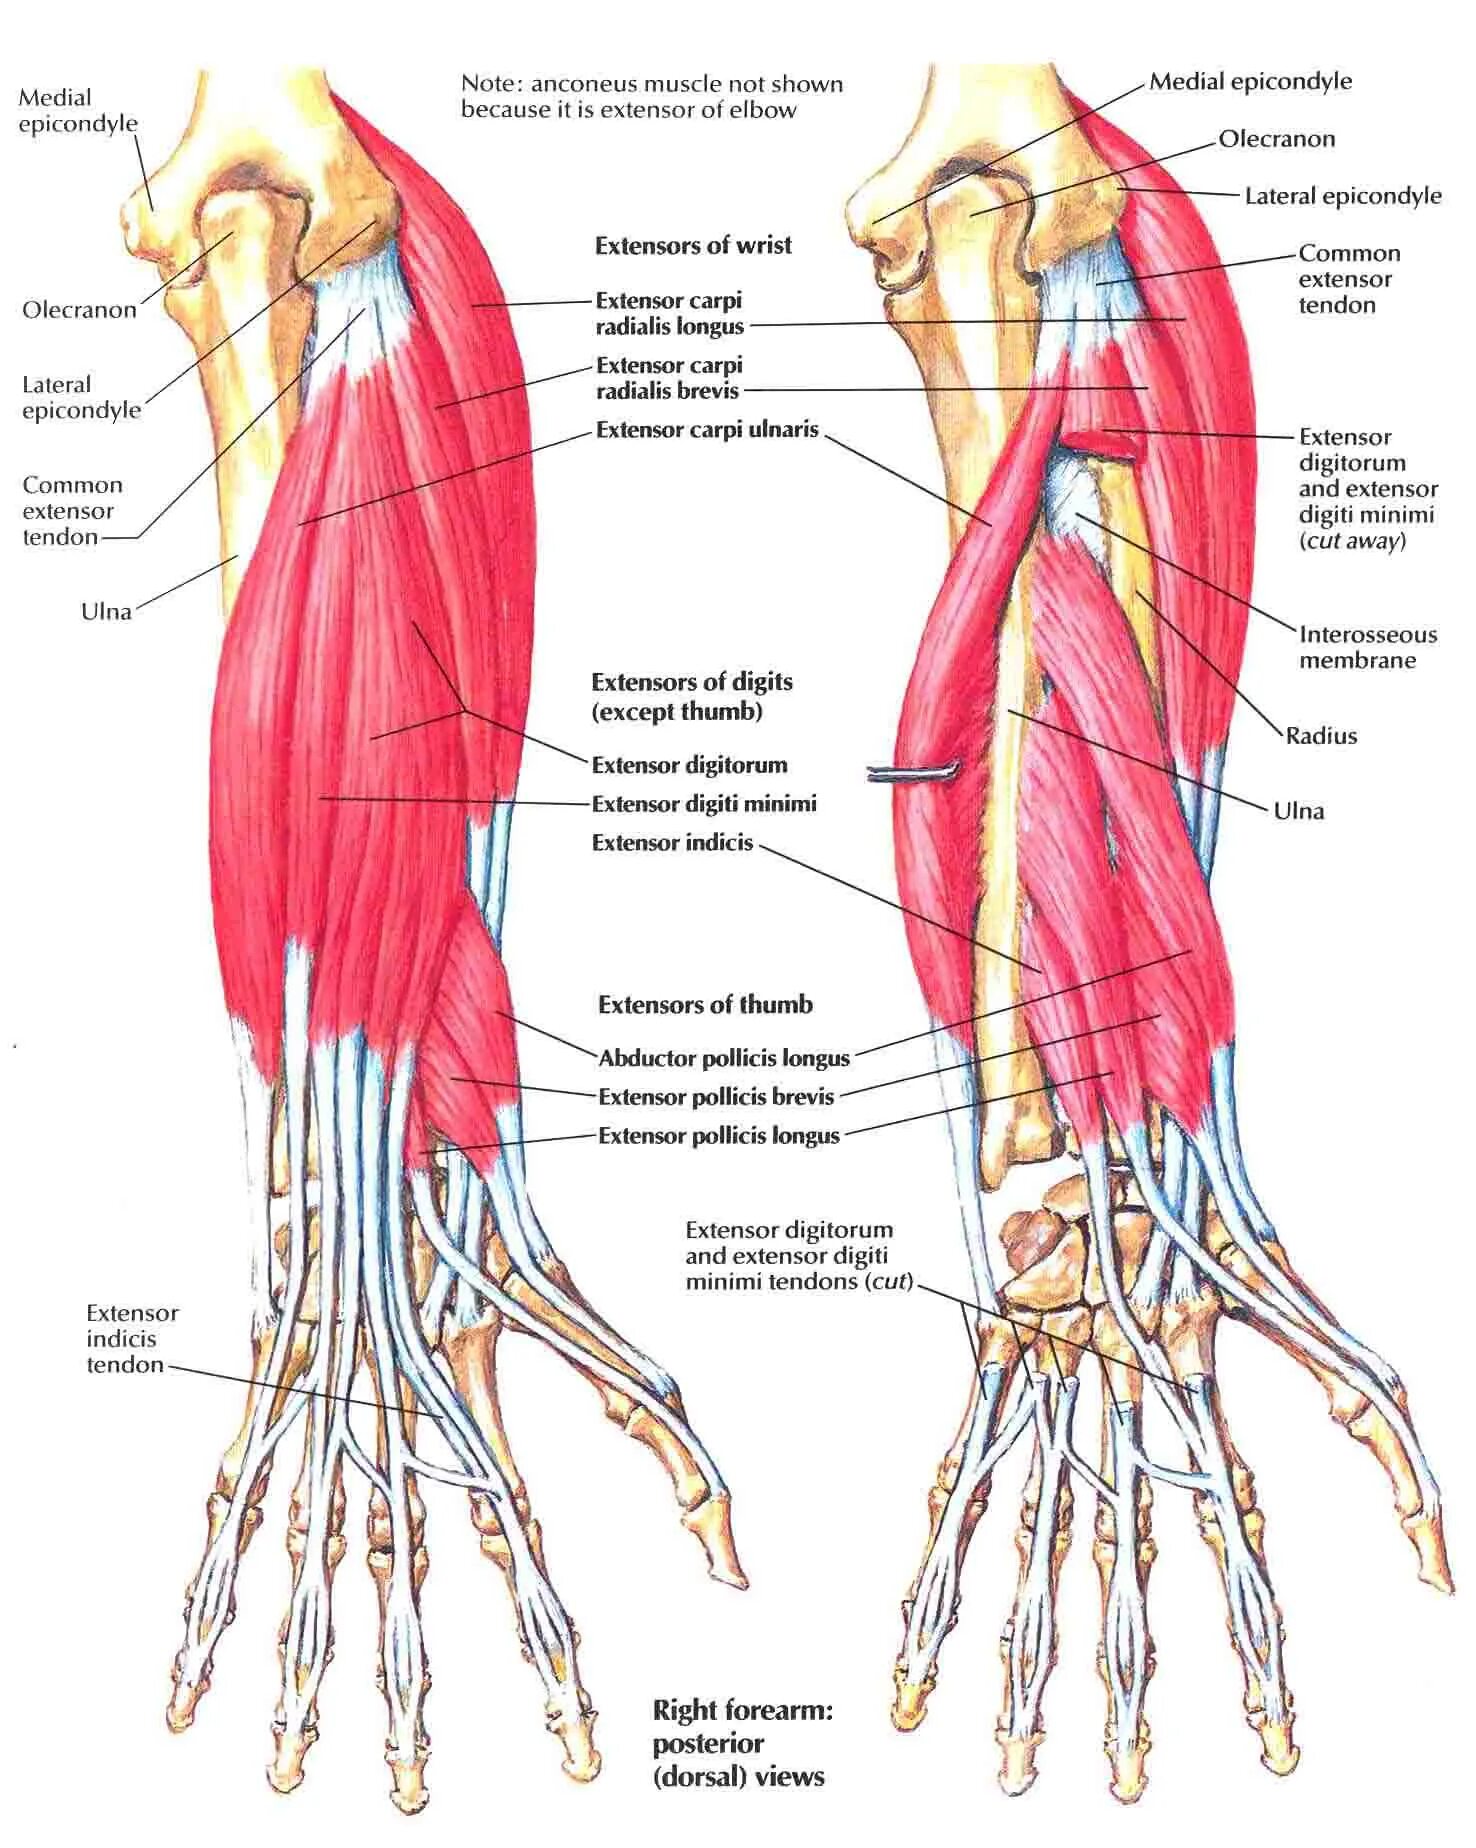 Анатомия мышц рук человека. Мышцы предплечья анатомия человека. Строение локтя и предплечья. Кости руки человека и мышцы предплечья. Внутреннее строение предплечья.